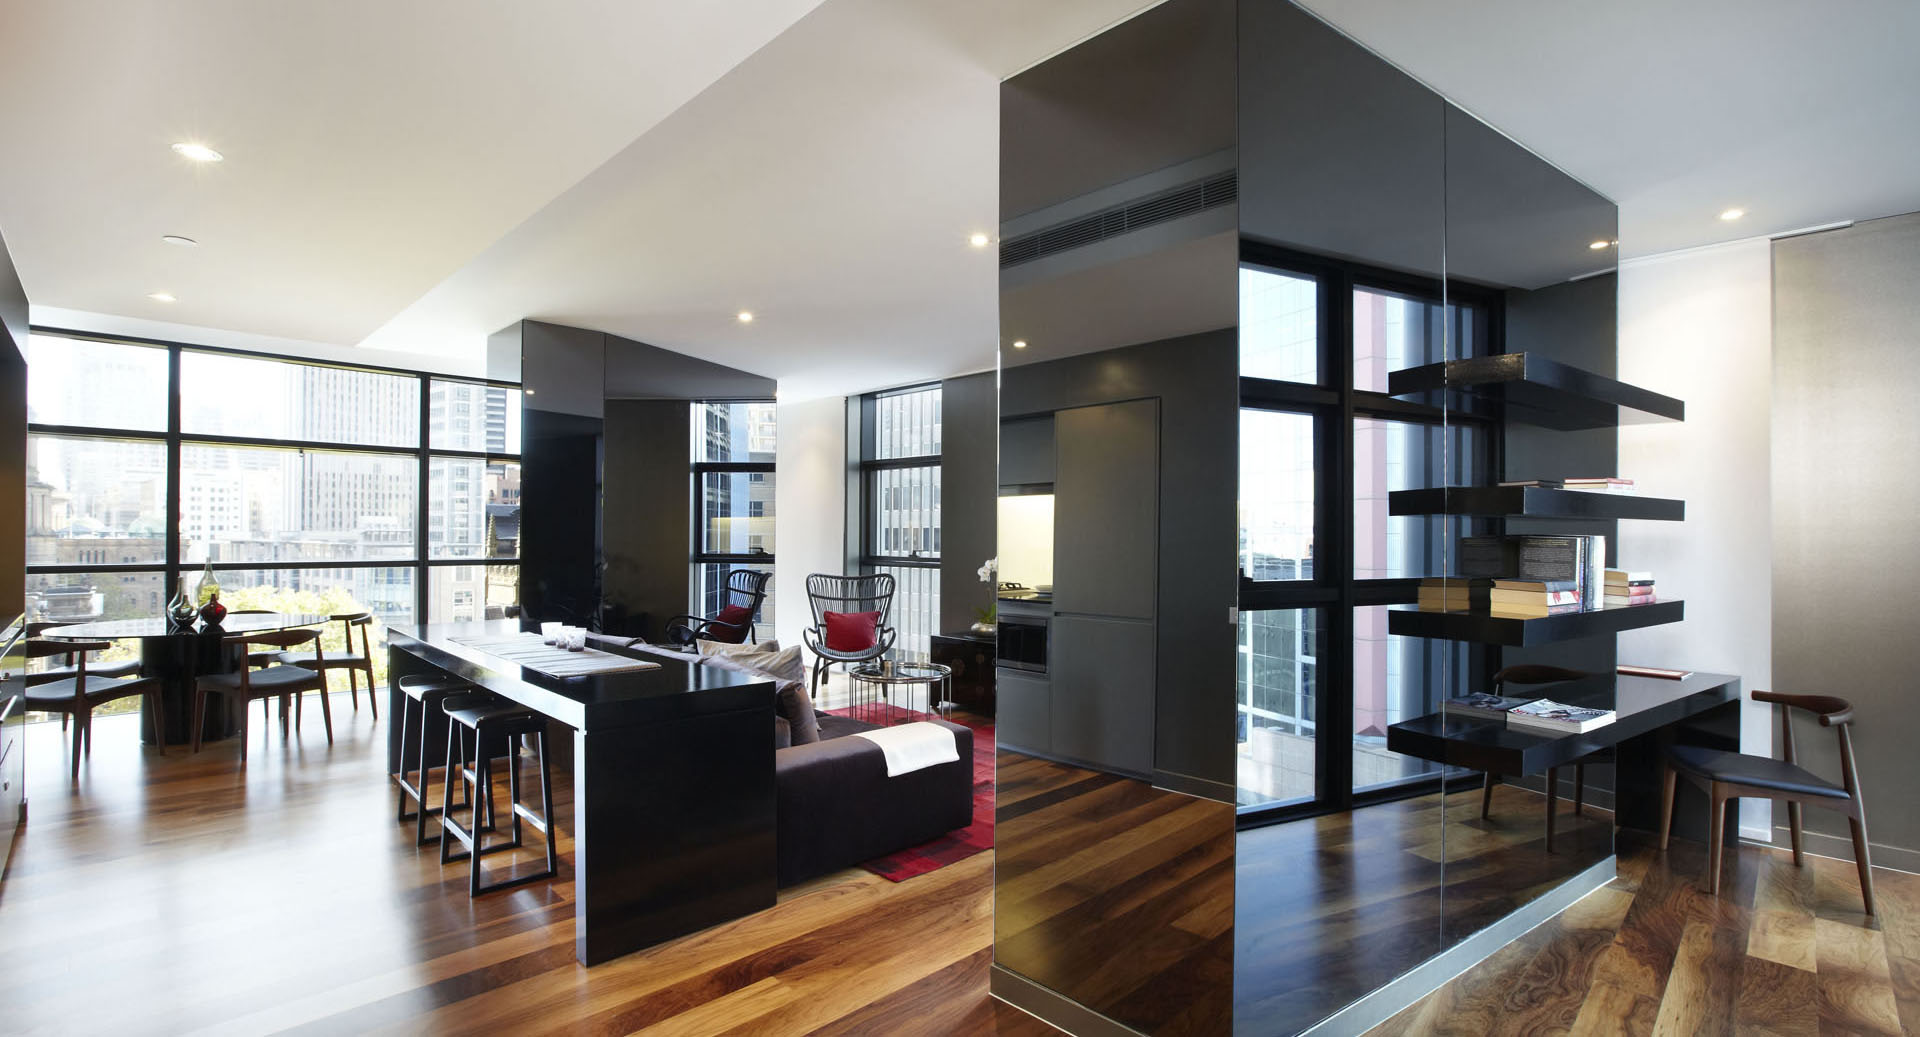 apartment interior contemporary designs studio sydney architecture smart idesignarch decorating